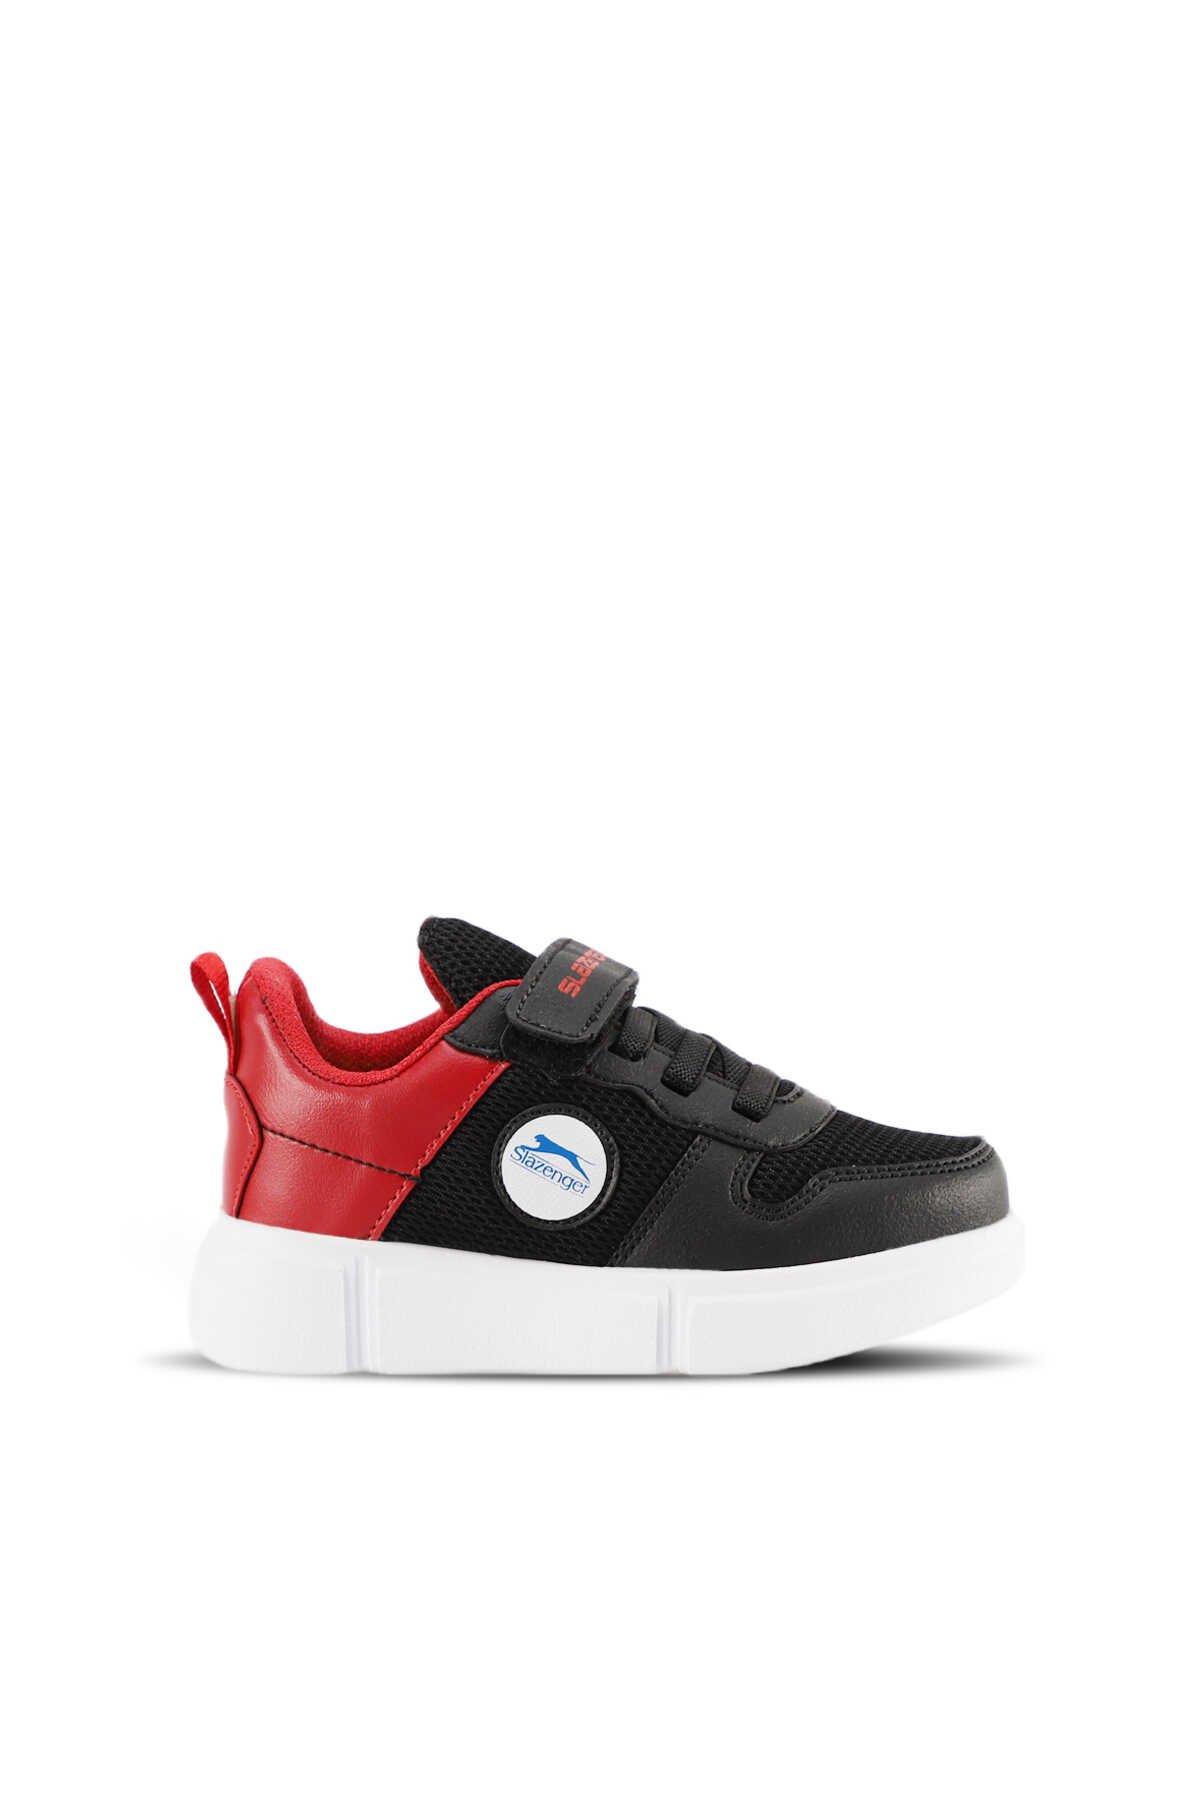 Slazenger - Slazenger KAVITHA KTN Sneaker Unisex Çocuk Ayakkabı Siyah / Kırmızı